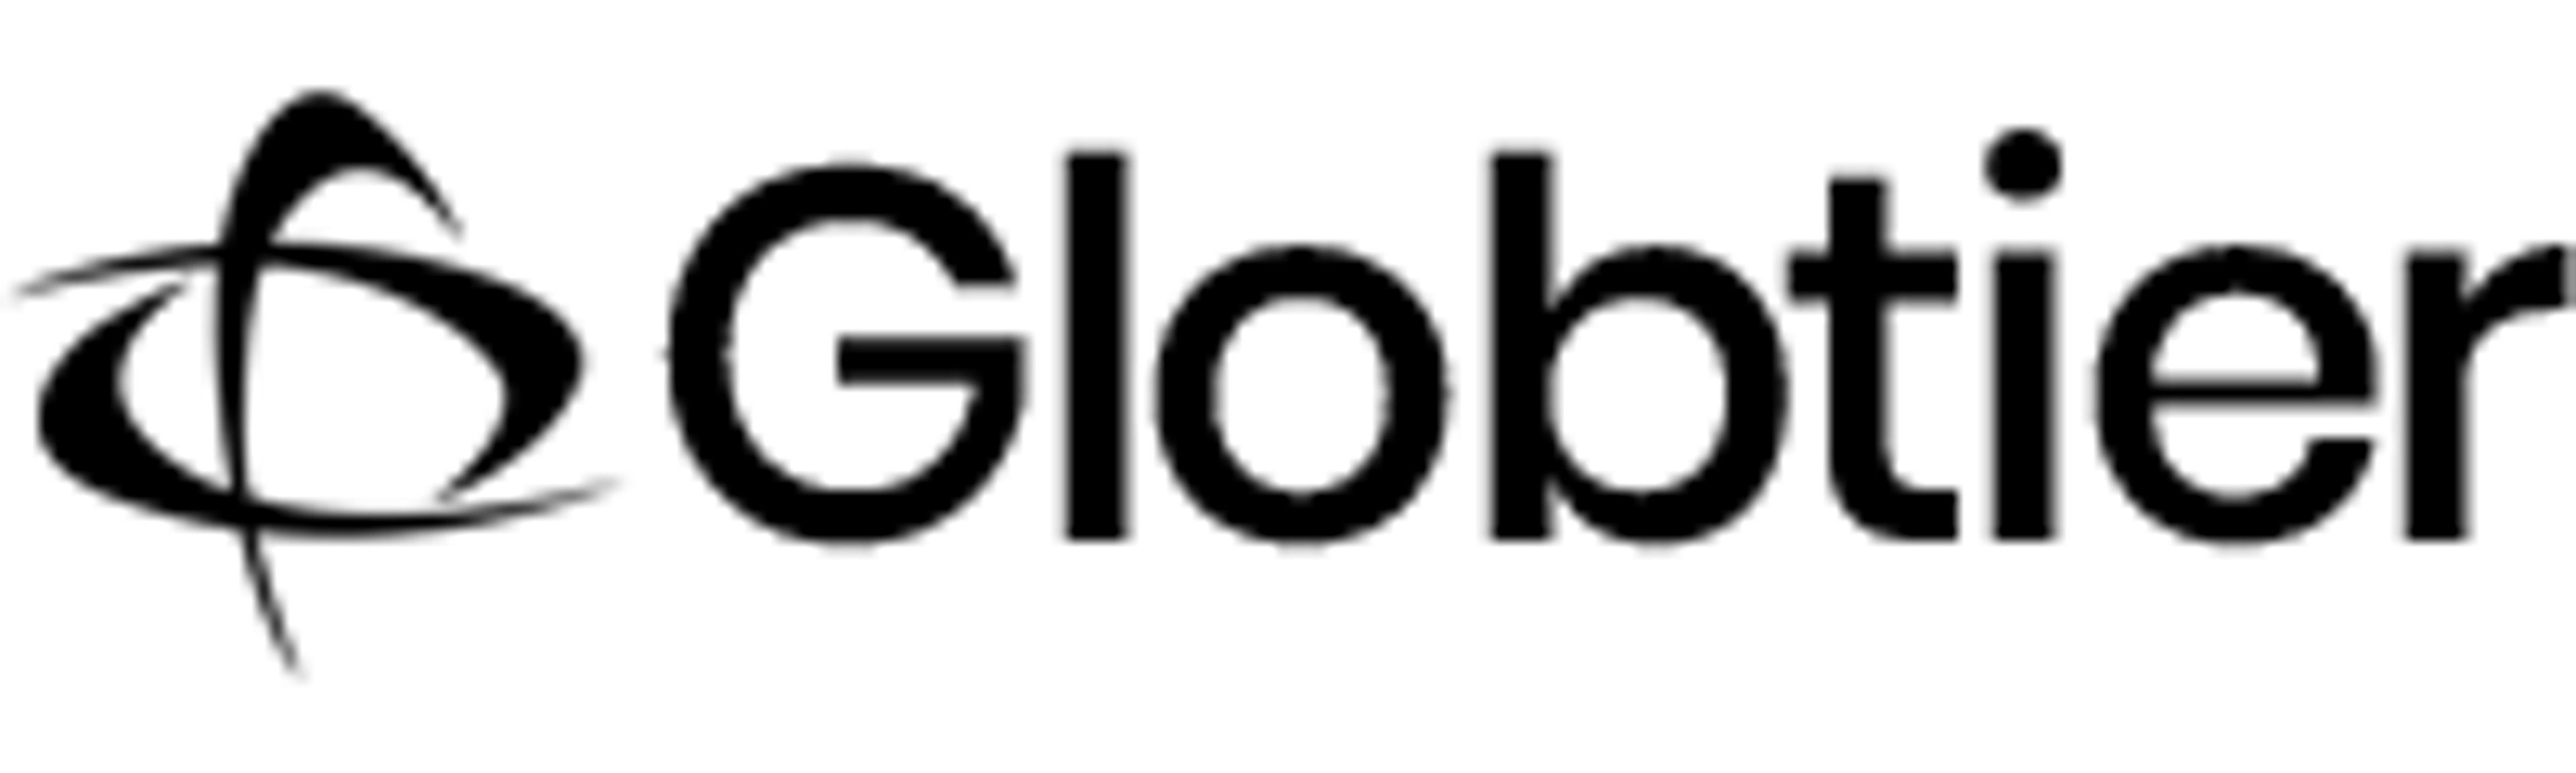 Globtier Infotech